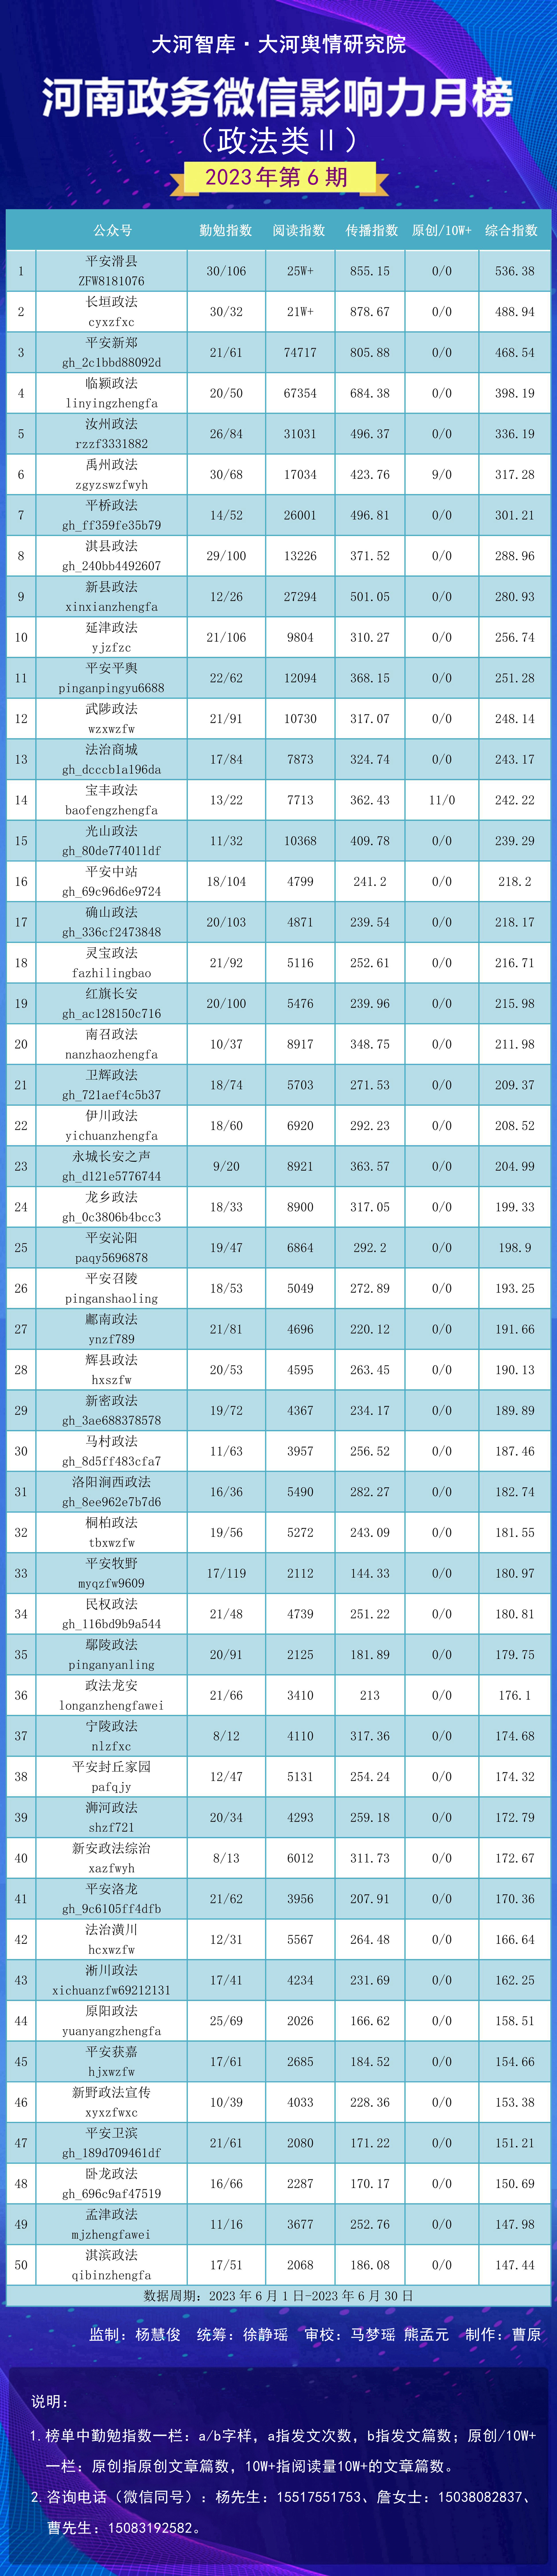 公众号排行榜_广工月榜|微信公众号影响力排行榜06.01-06.30